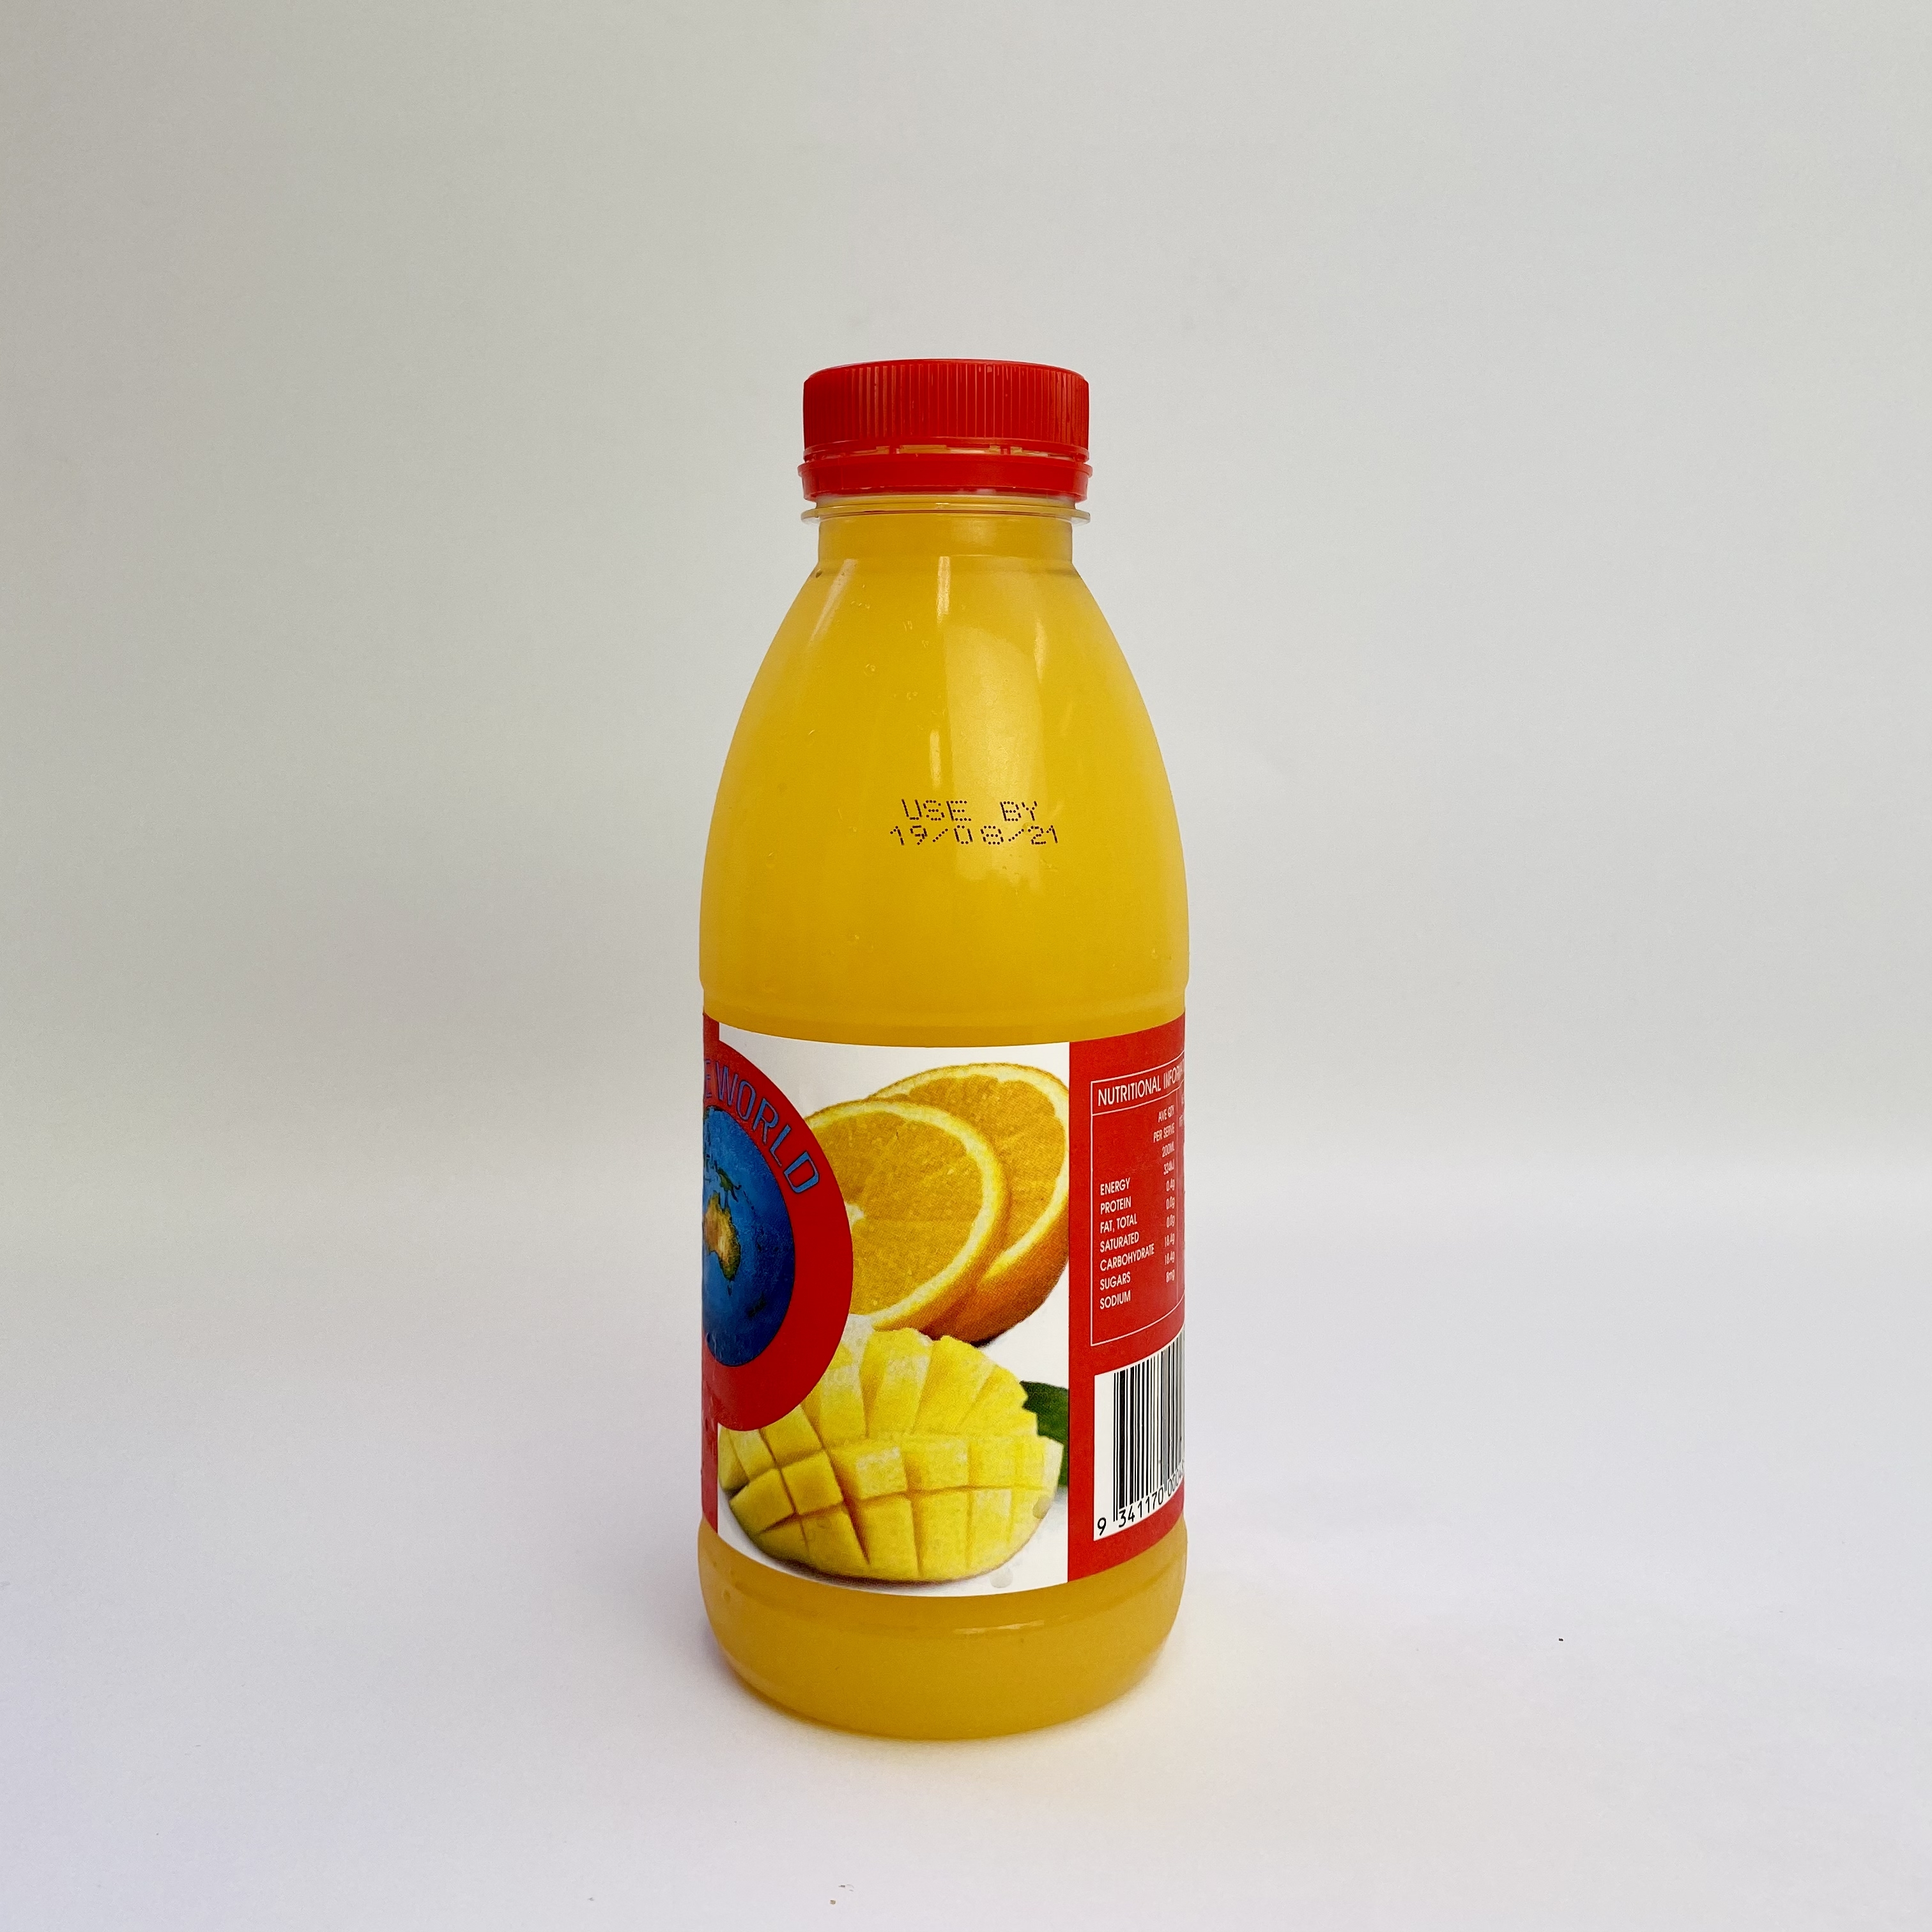 香橙芒果汁 Orange & mango juice